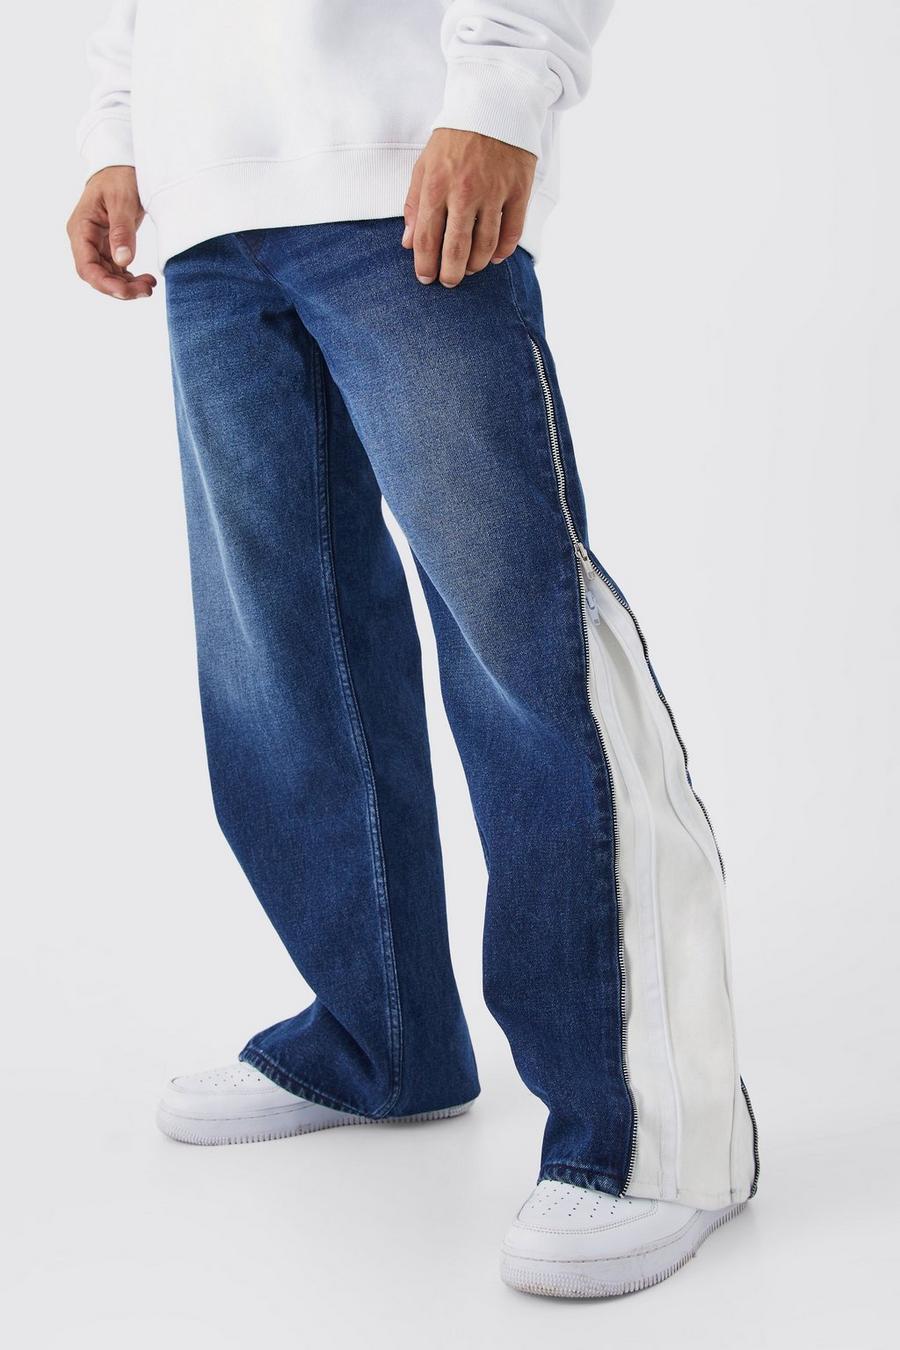 Lockere Kontrast-Jeans mit Reißverschlüssen, Indigo